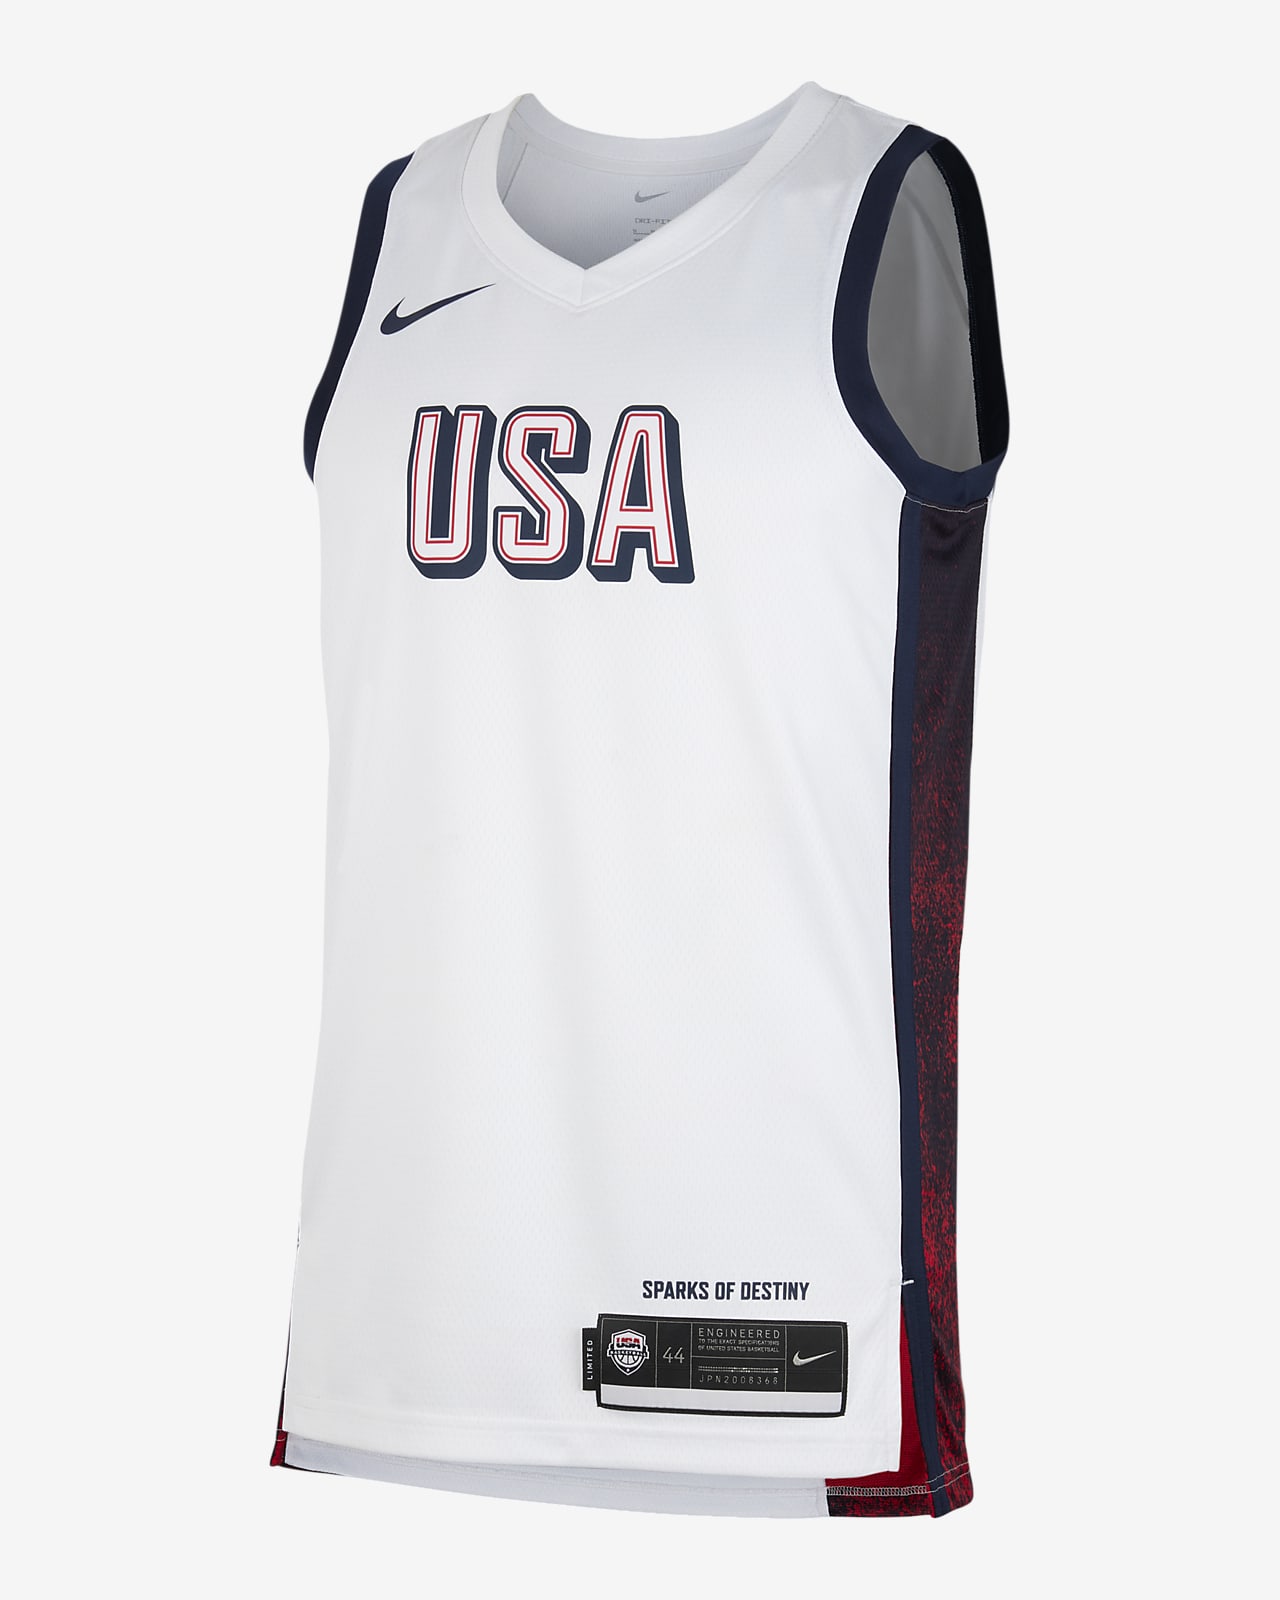 USAB Limited Home Nike Basketballtrikot (Herren)